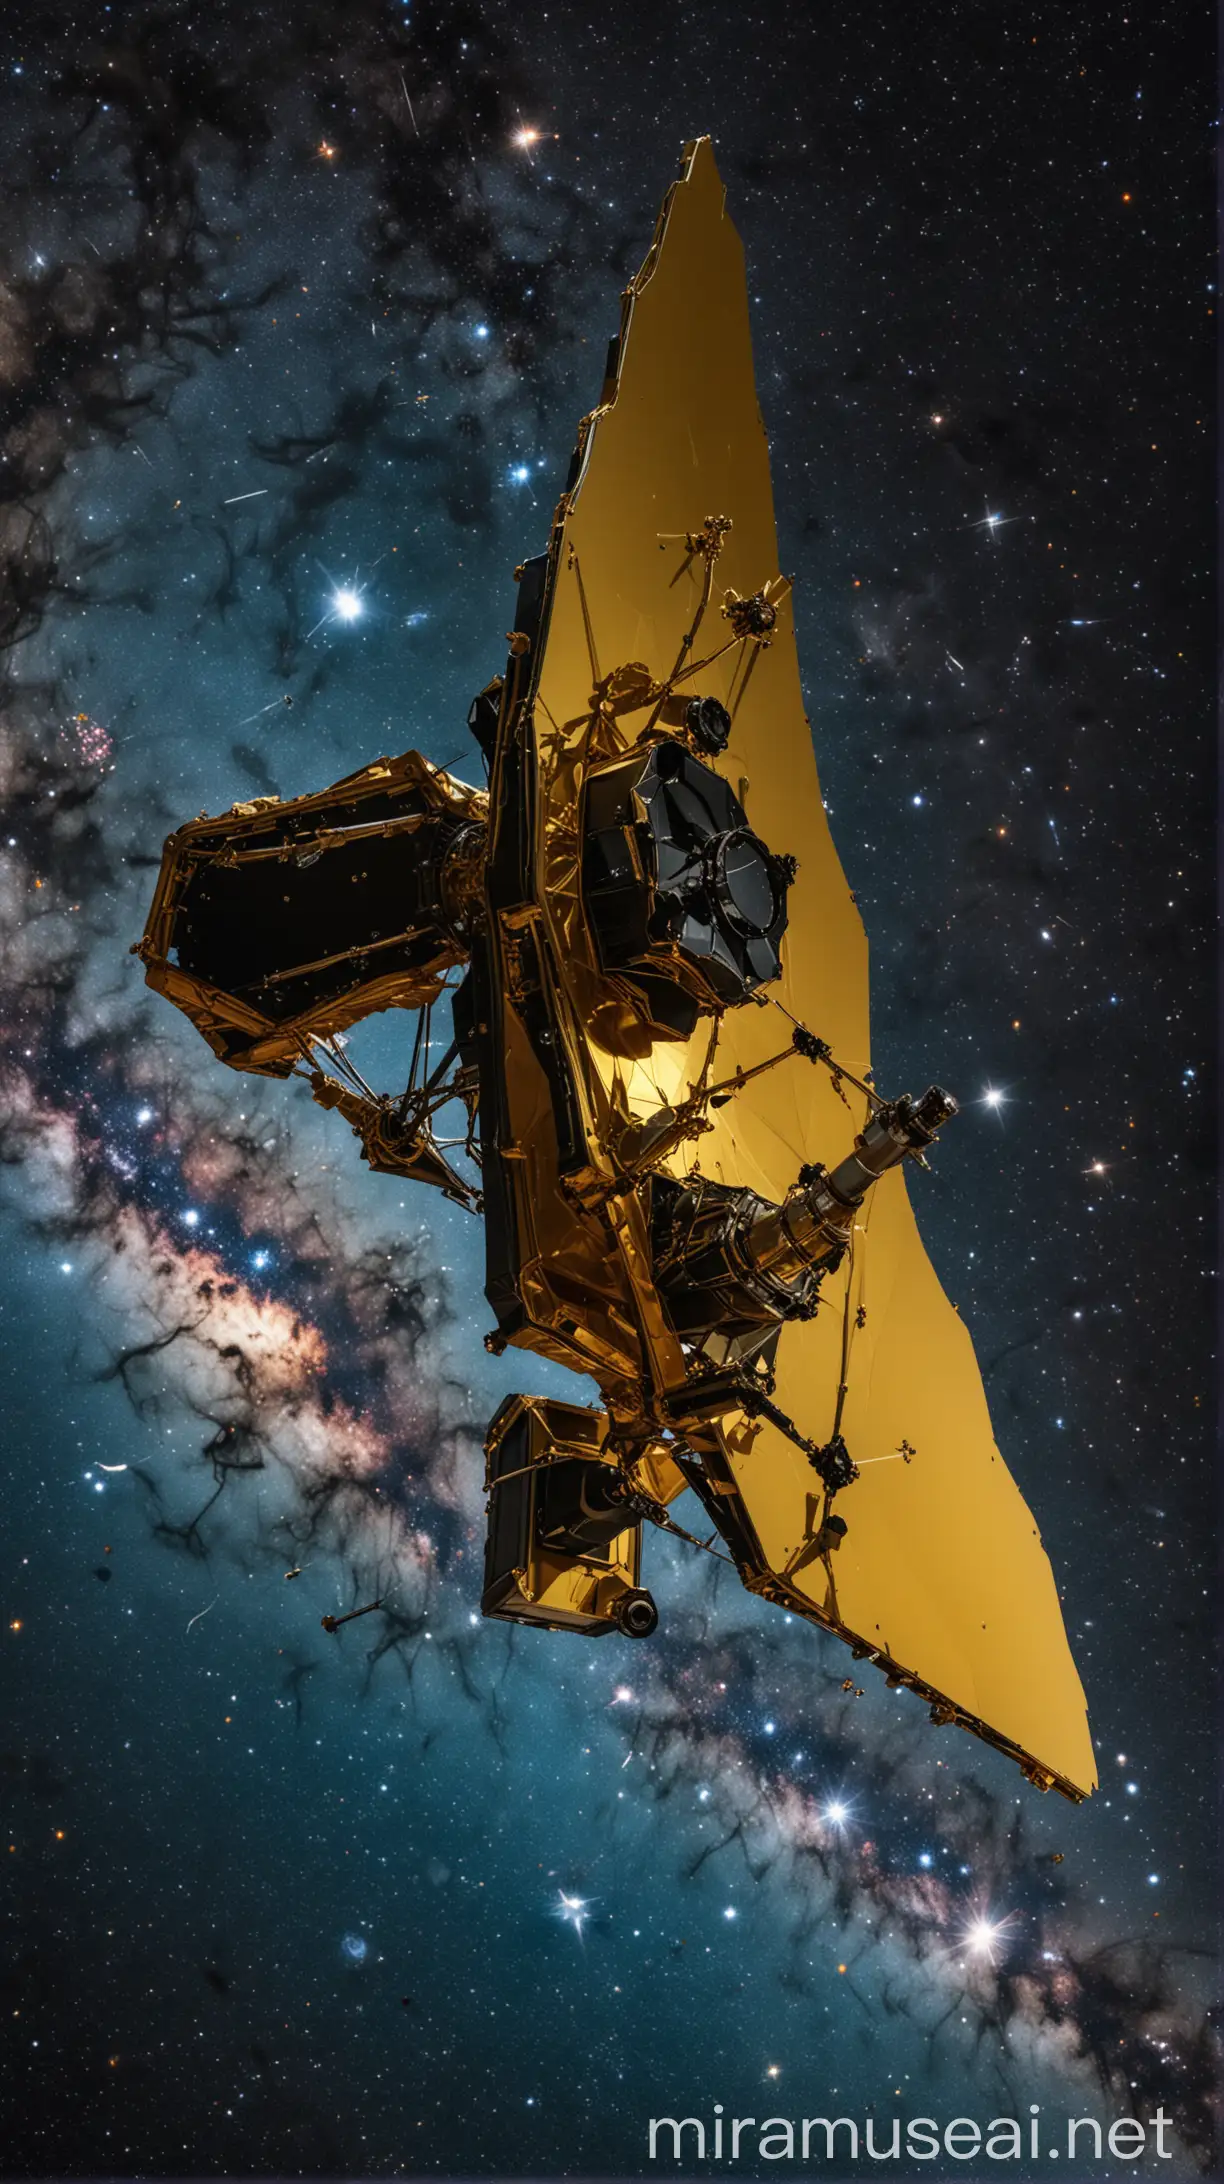 A imagem mostra o majestoso Telescópio Espacial James Webb (JWST) pairando no espaço sideral, com a Terra visível ao fundo como um pequeno ponto azul brilhante. O JWST está totalmente desdobrado, com seu espelho dourado segmentado refletindo a luz das estrelas distantes.

Ao redor do JWST, vemos uma constelação de estrelas e nebulosas, criando um cenário deslumbrante de cores vibrantes e formas intrigantes. As estrelas parecem dançar ao redor do telescópio, transmitindo uma sensação de movimento e exploração.
A atmosfera da imagem é de maravilha e descoberta, convidando os espectadores a se perderem na vastidão do espaço e a contemplar a beleza do universo através dos olhos do poderoso JWST. Esta imagem certamente chamará a atenção e prenderá o espectador com sua beleza e evocação de mistério cósmico.


